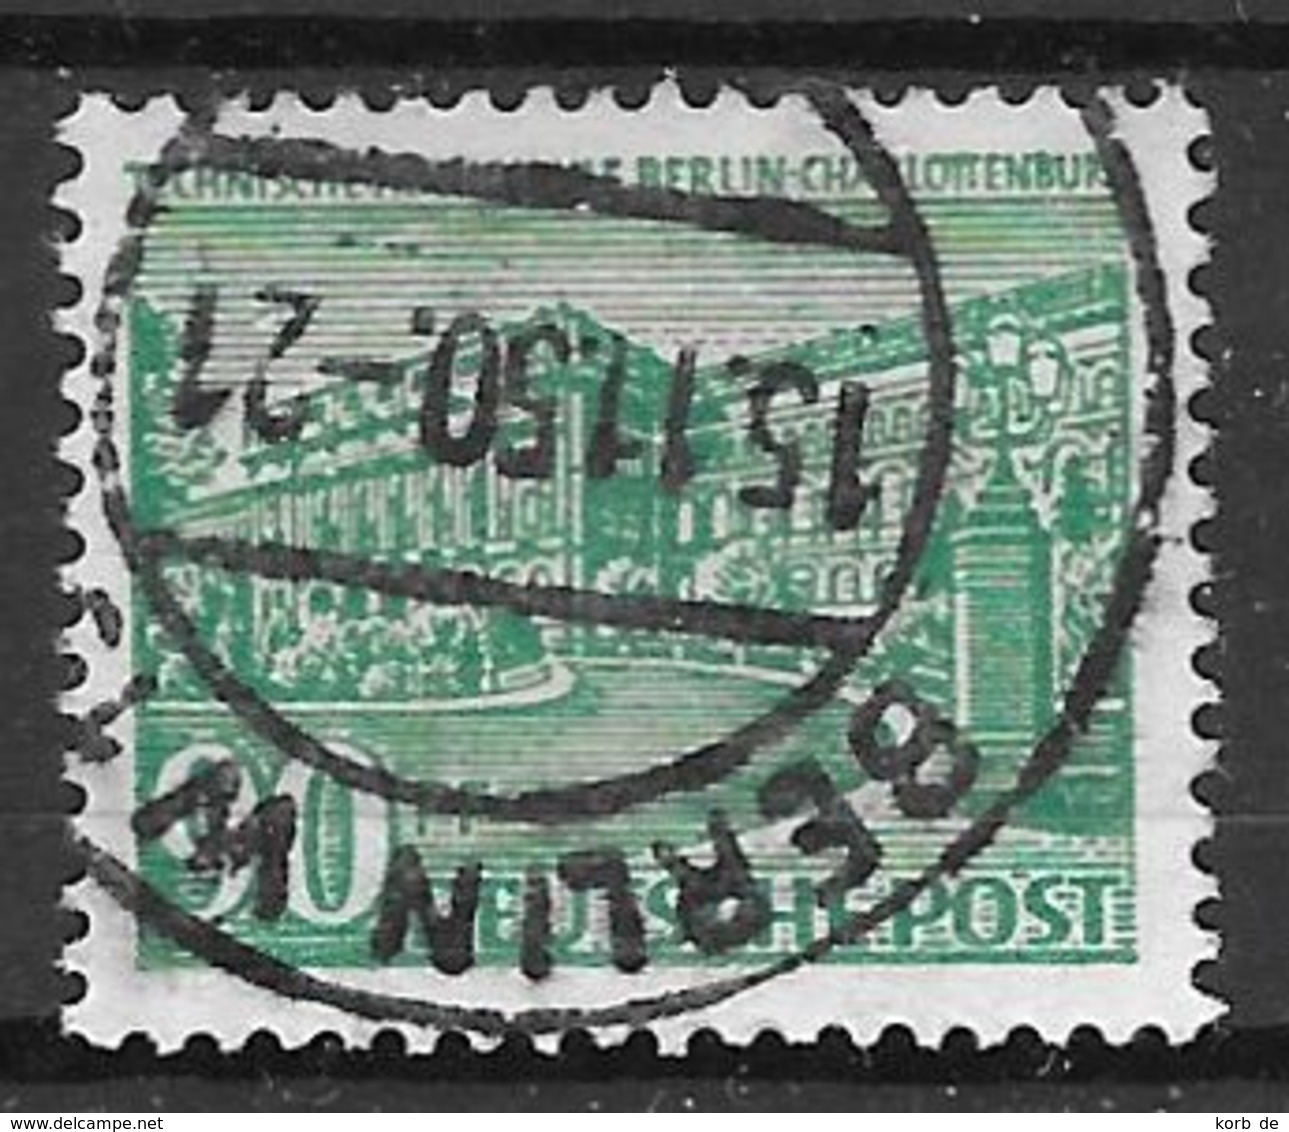 Berlin 1949 / MiNr.     56   Stempel  15.11.1950     O / Used  (f2067) - Gebraucht